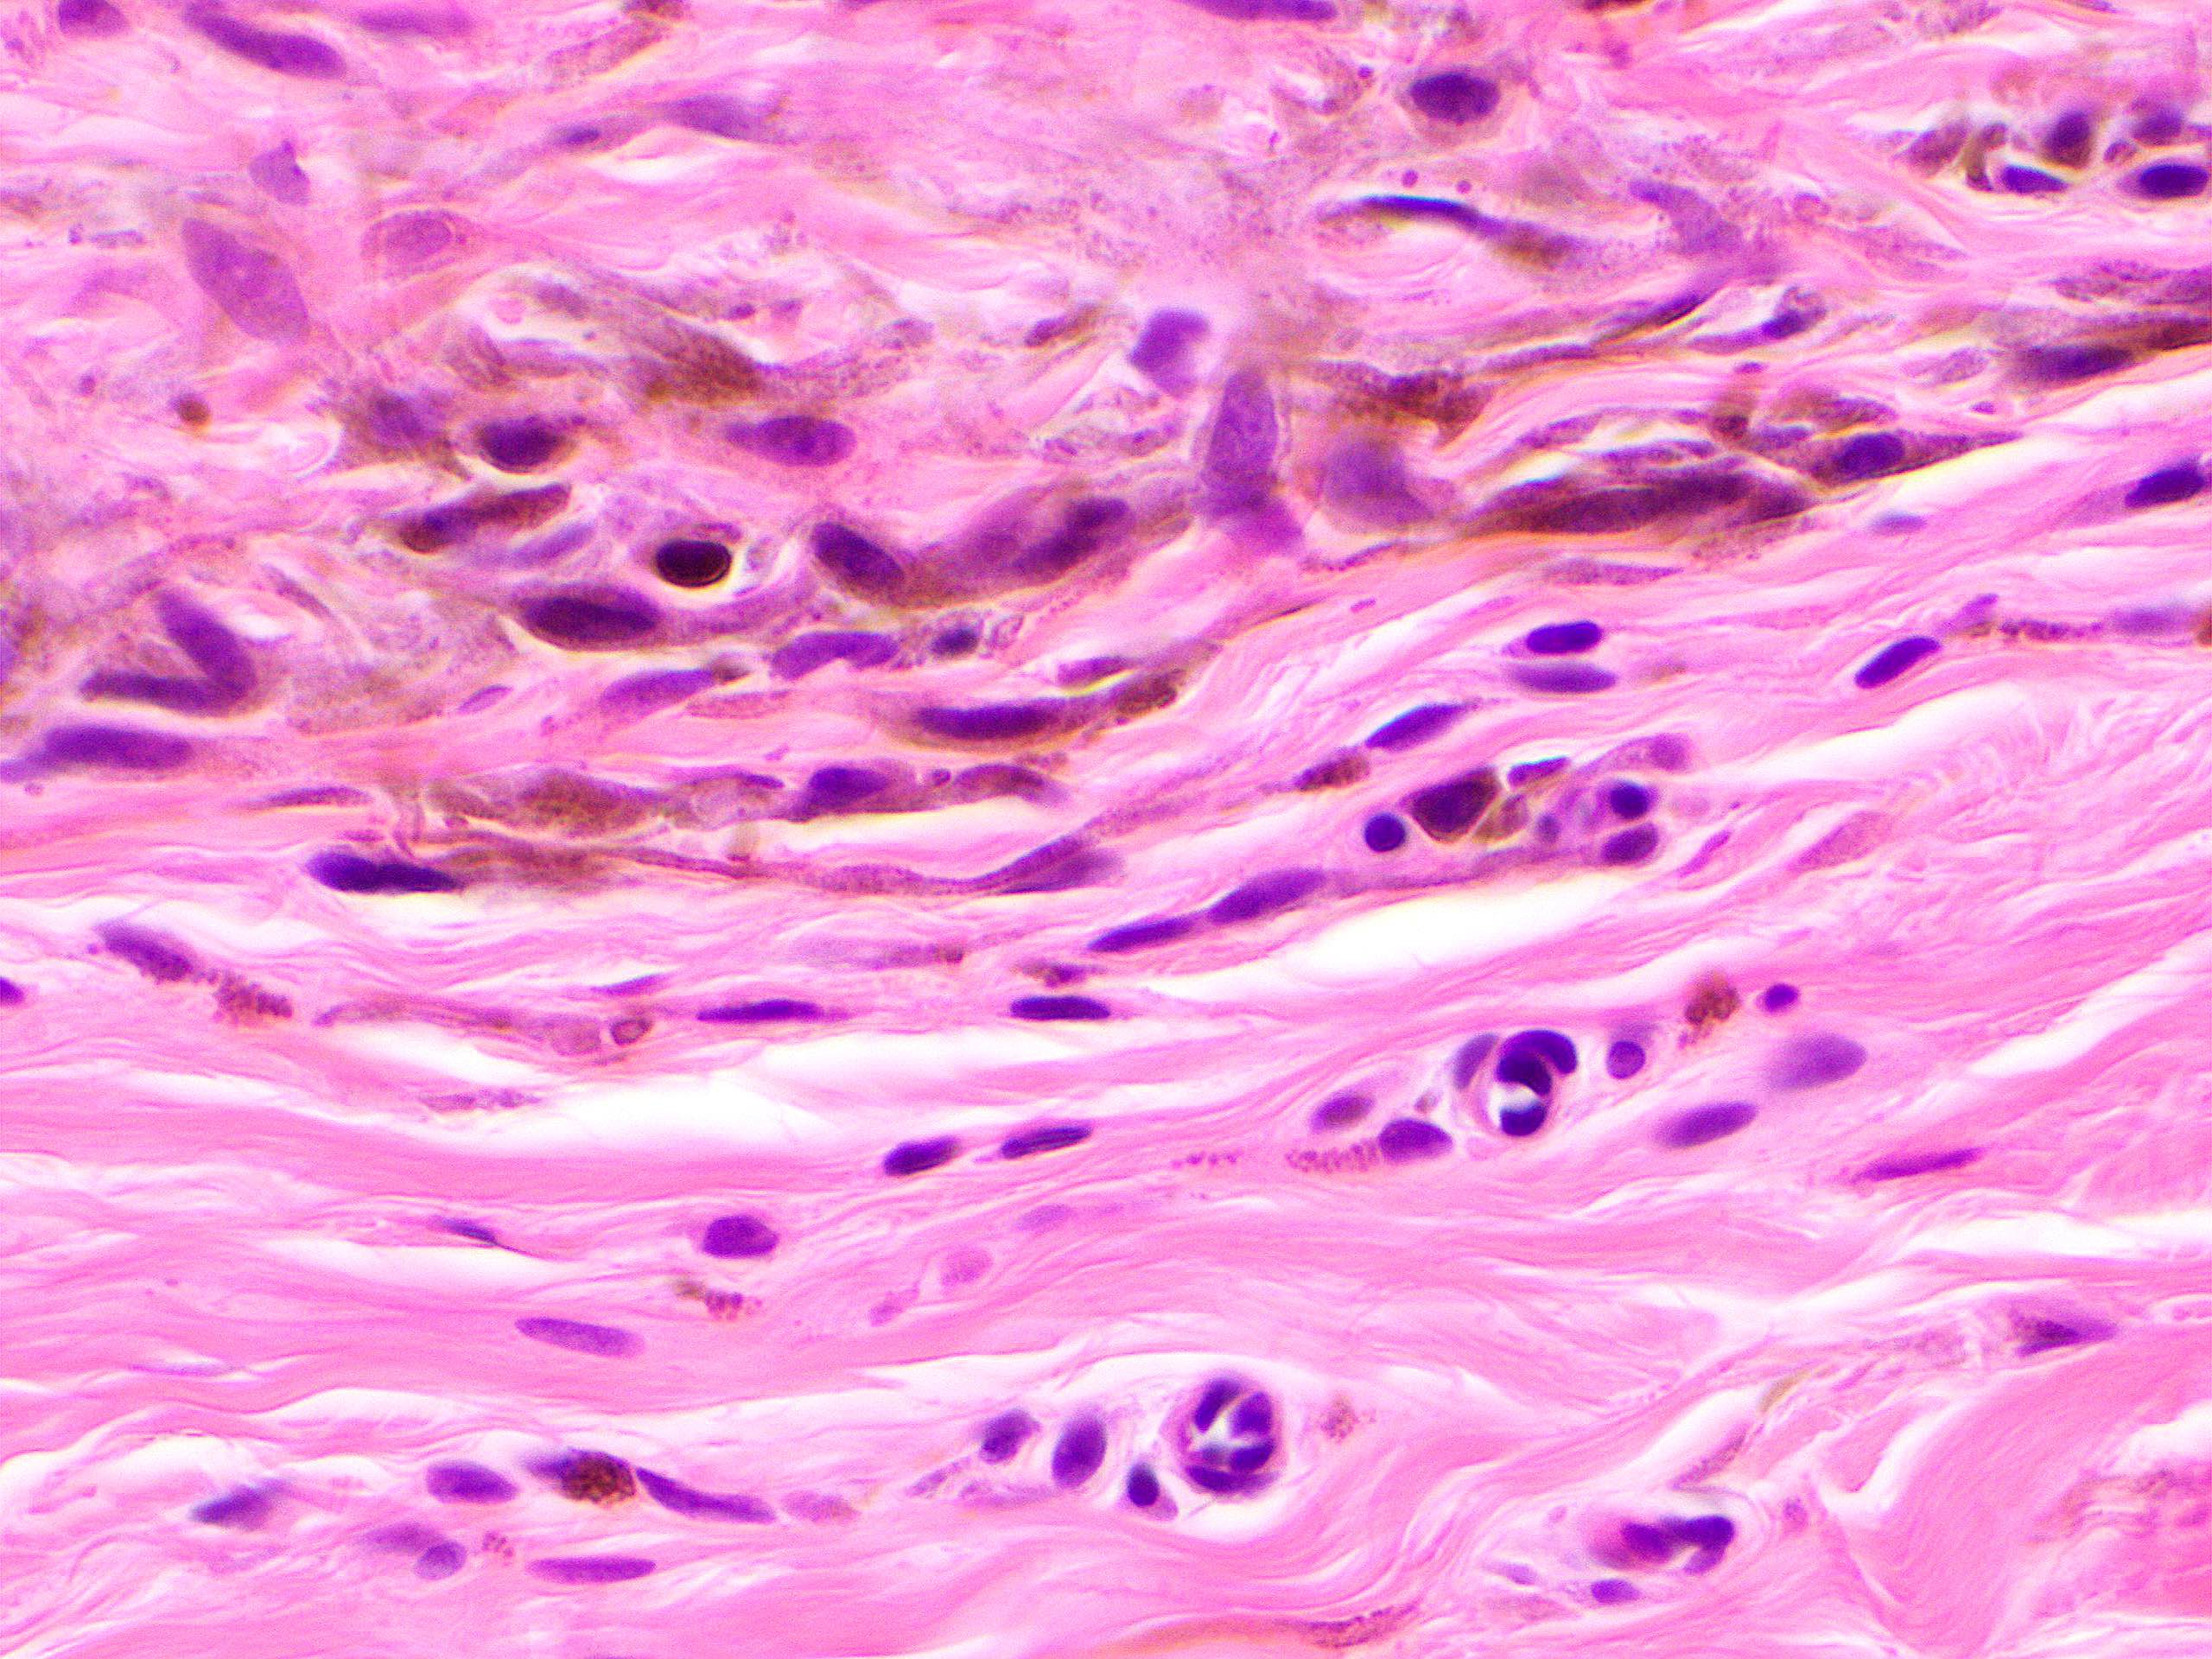 Pigmented dendritic melanocytes